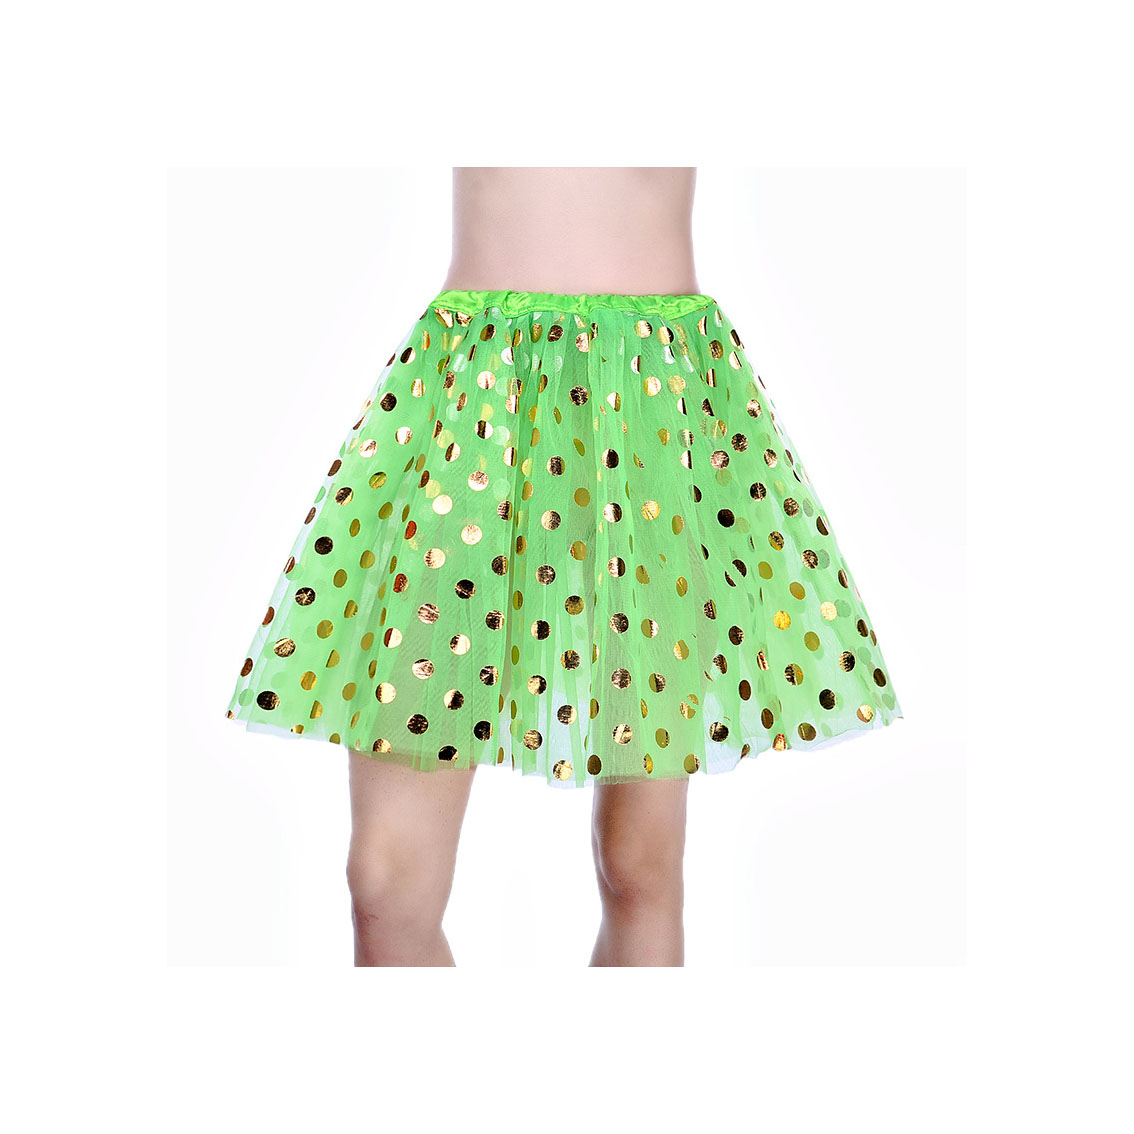 Adult Tutu Skirt Sequin Gilding Polka Dot 3 Layers Party Dance Ballet Pettiskirt Tulle Girl Mini Skirt Lime Green+gold